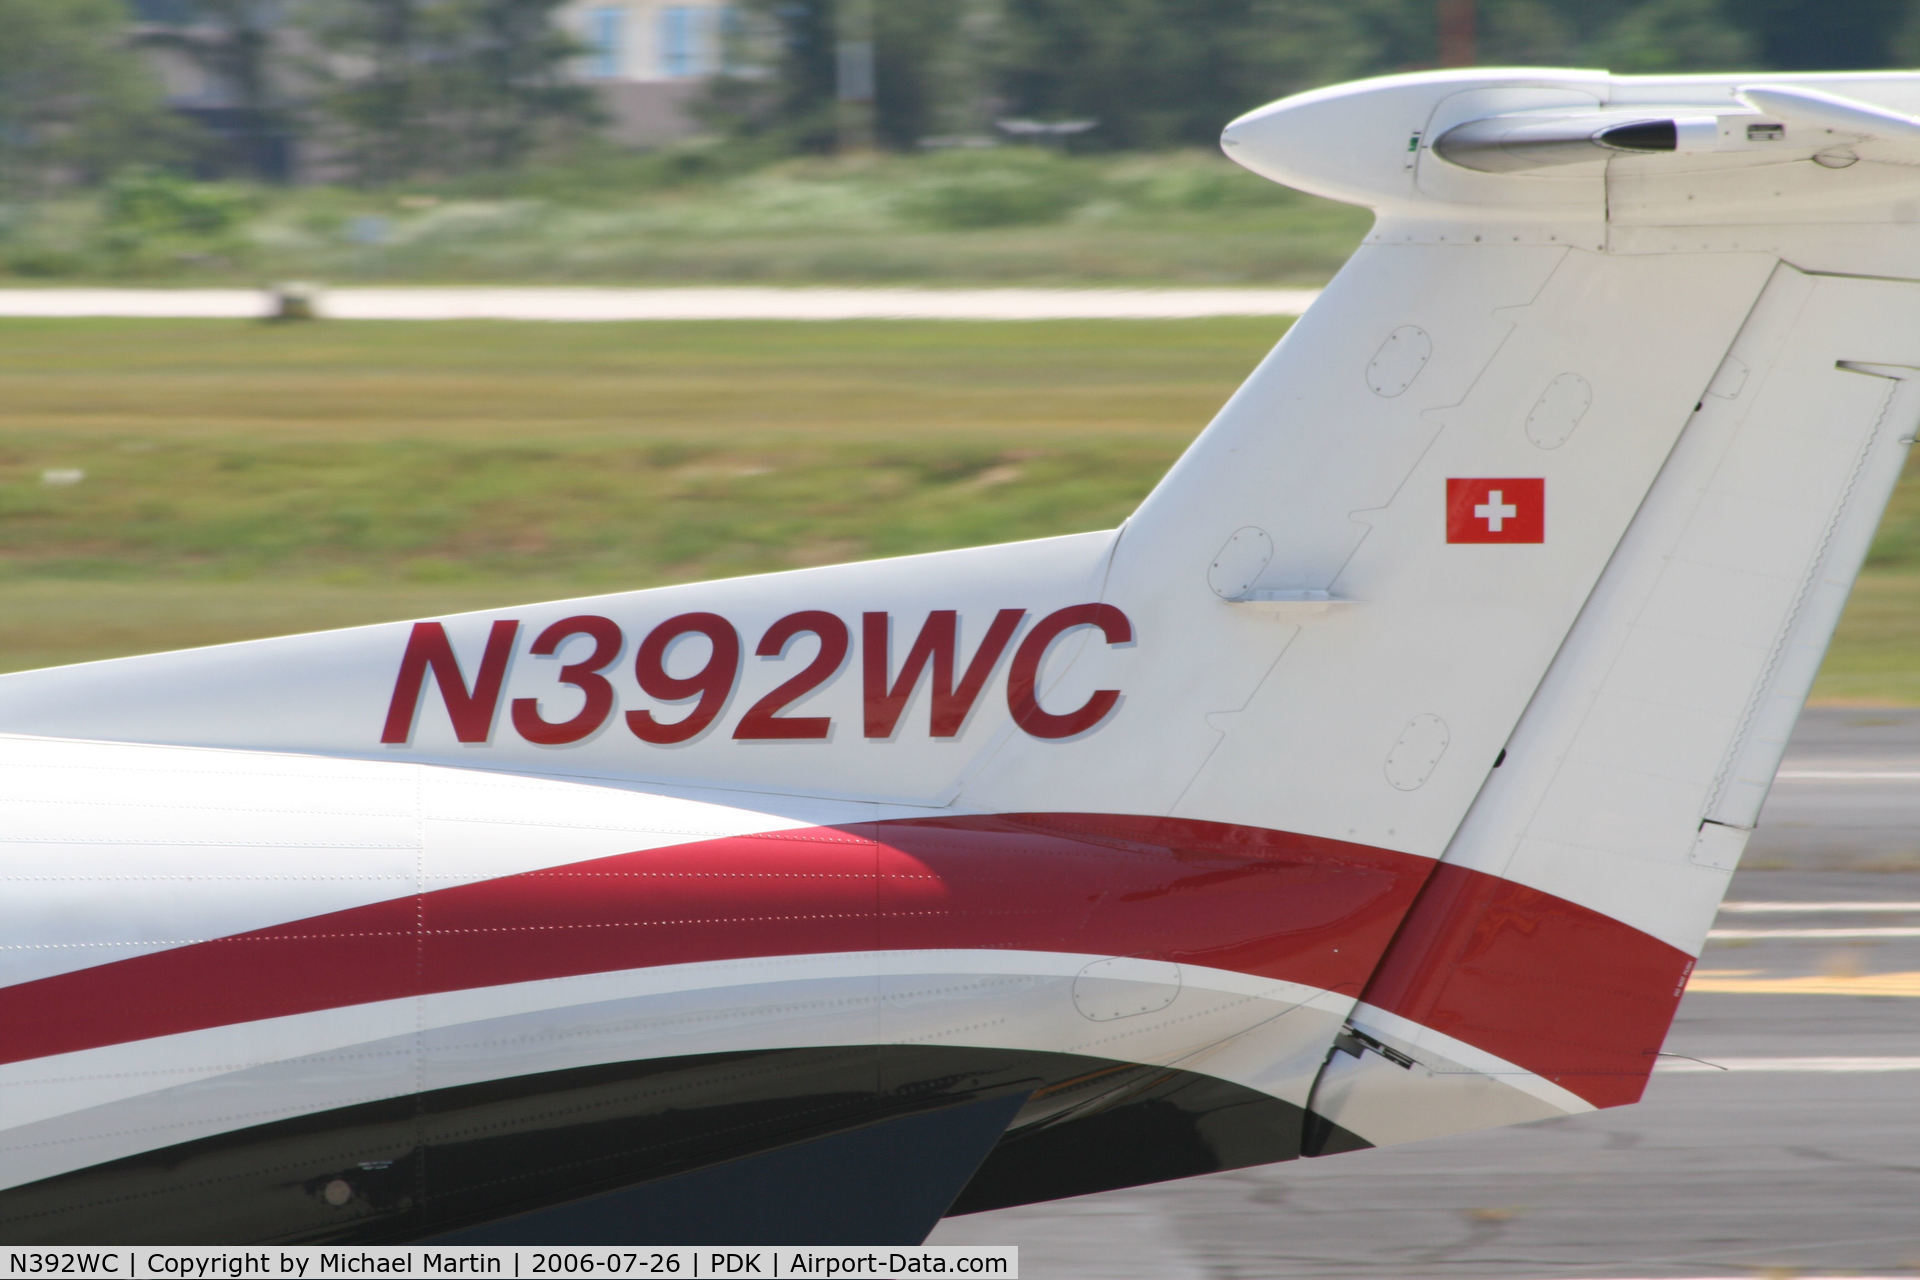 N392WC, 2000 Pilatus PC-12/45 C/N 392, Tail Numbers